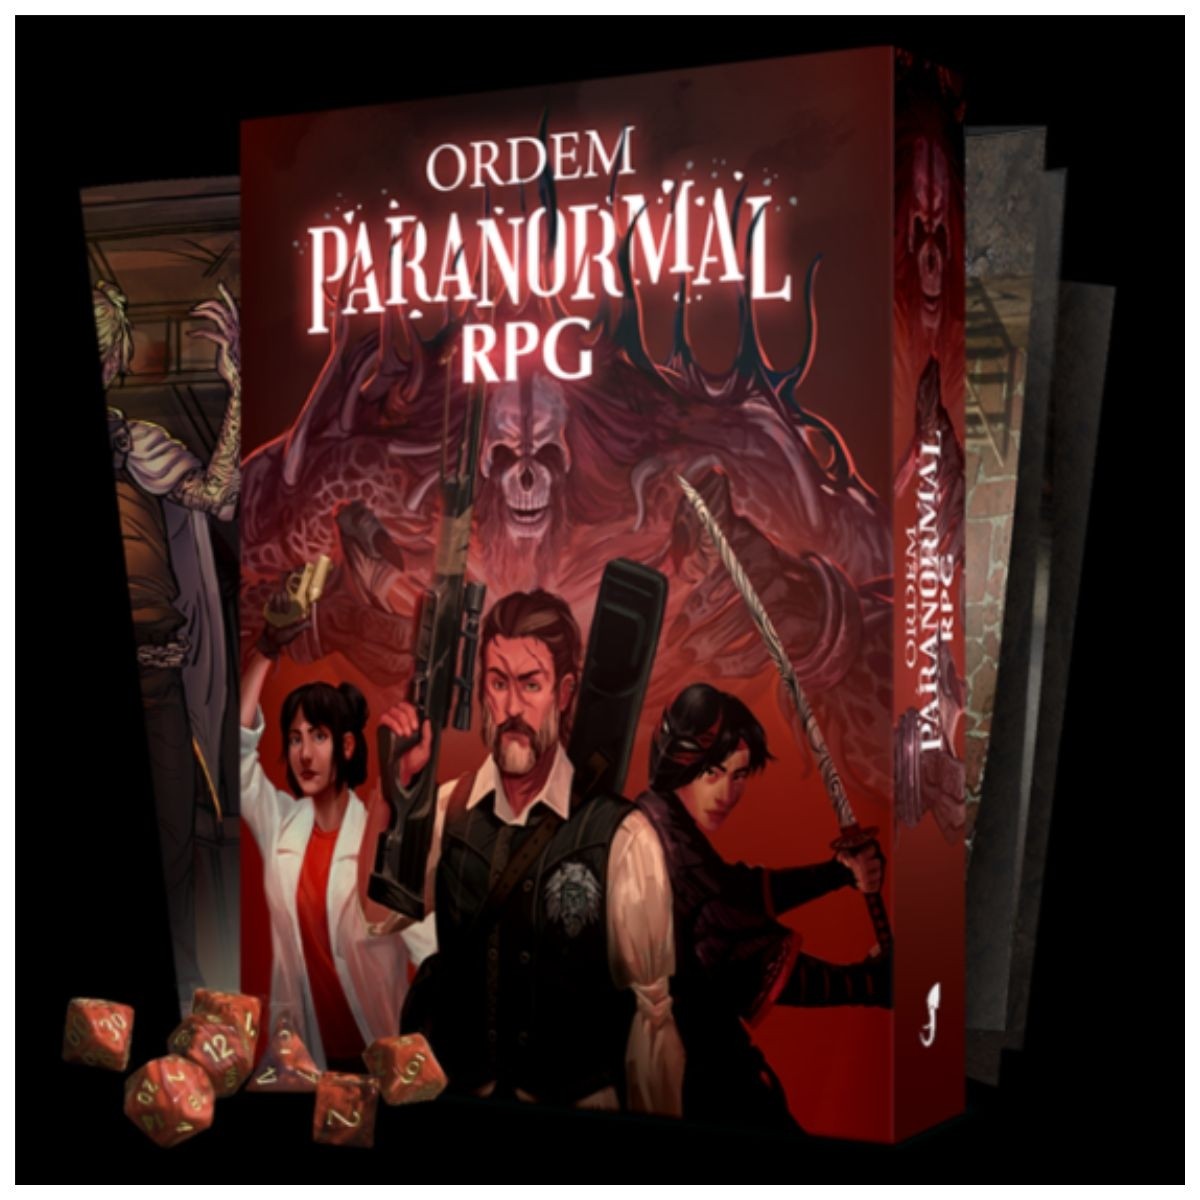 Ordem Paranormal RPG volta a ficar à venda no site da Jambô - Game